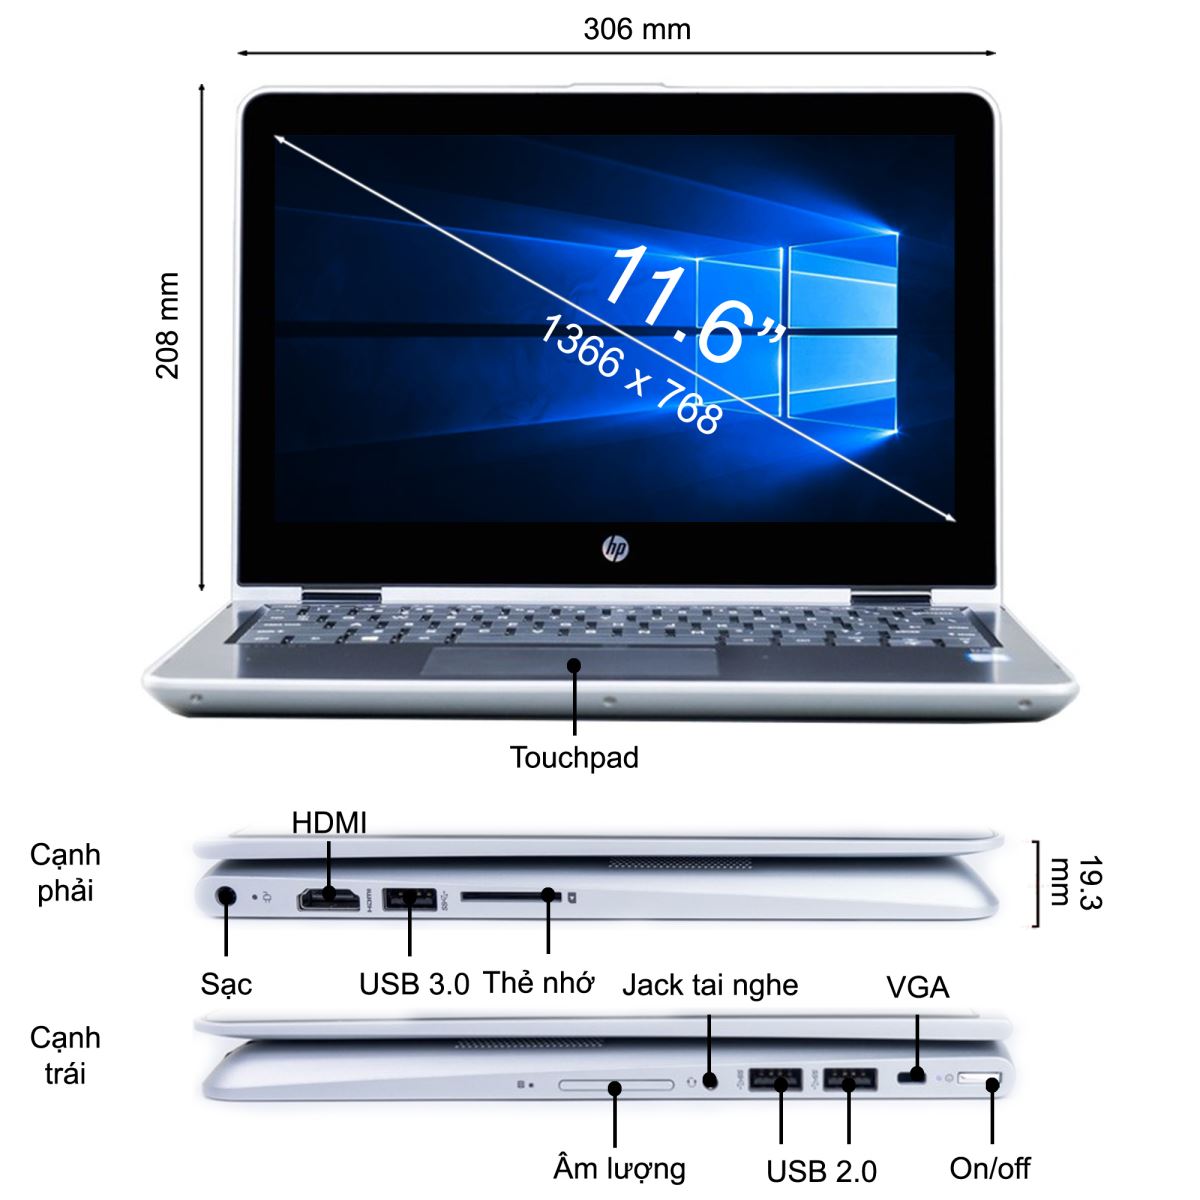 Laptop HP Pavilion x360 thiết kế đơn giản những không kém phần sang trọng